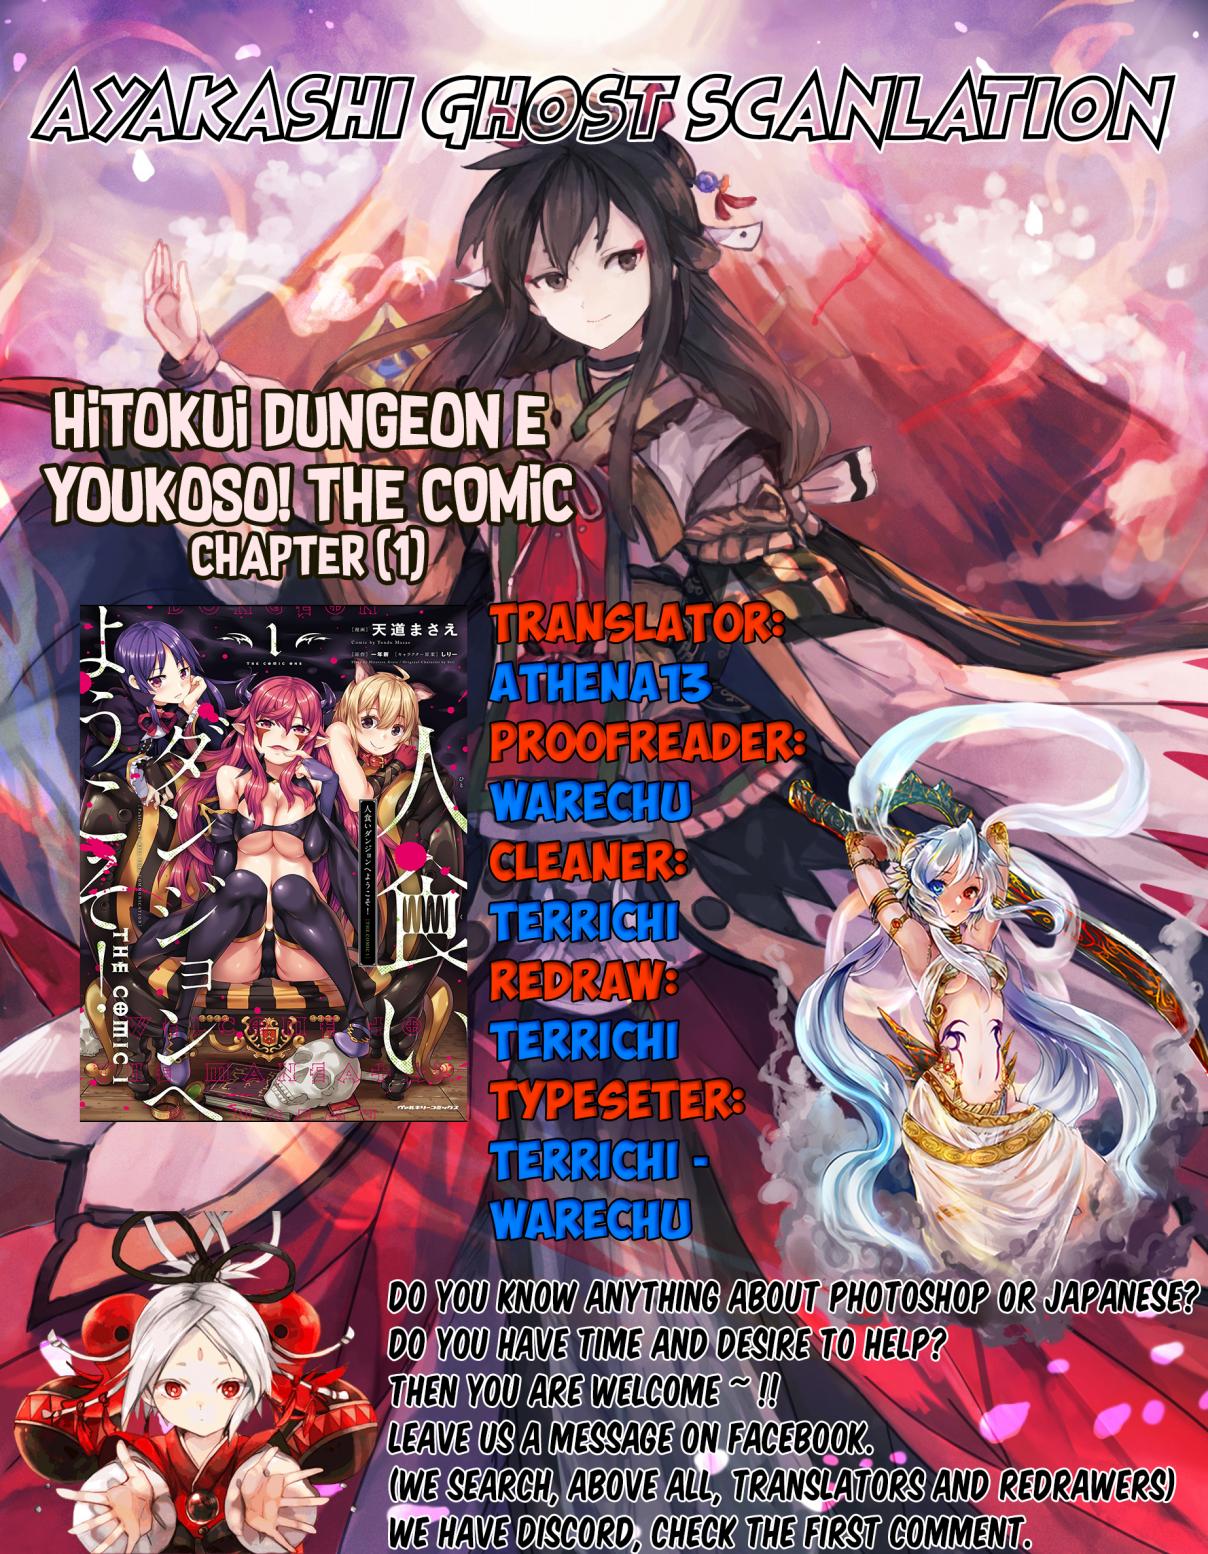 Hitokui Dungeon e Youkoso! THE COMIC Vol. 1 Ch. 1